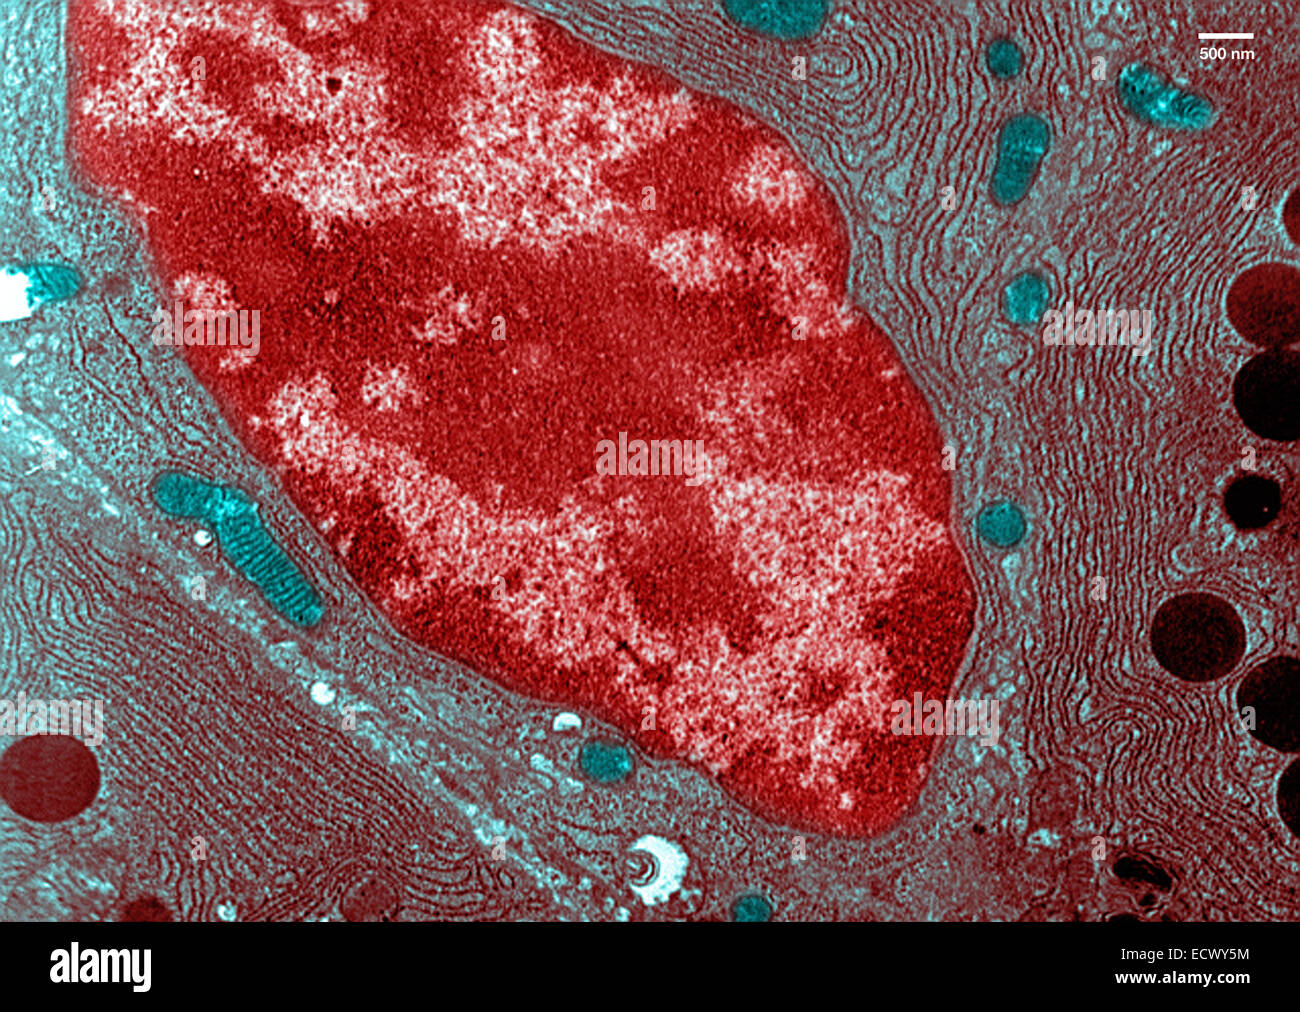 Microscopio elettronico a trasmissione immagine di cellule pancreatiche. Foto Stock